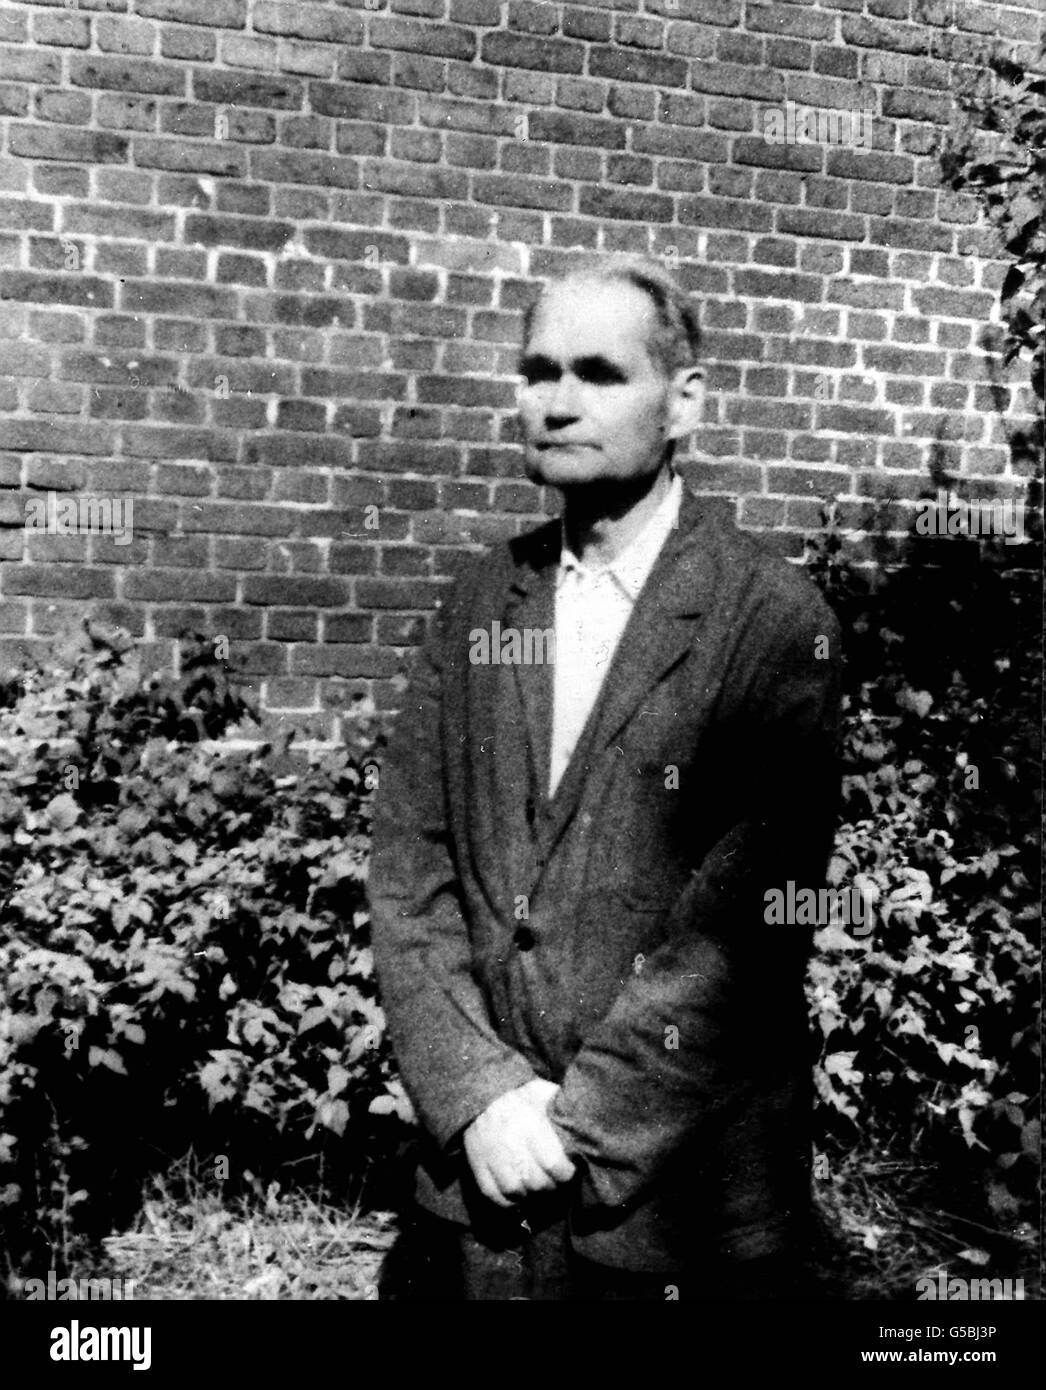 RUDOLF HESS 1982 : ancien adjoint d'Adolf Hitler, Rudolf Hess, dans le jardin de la prison de Spandau, Berlin. Hess a purgé une peine à vie après avoir été reconnu coupable de crimes de guerre lors du procès de Nuremberg en 1946. Il est décédé en août 1987, âgé de 93 ans. Banque D'Images